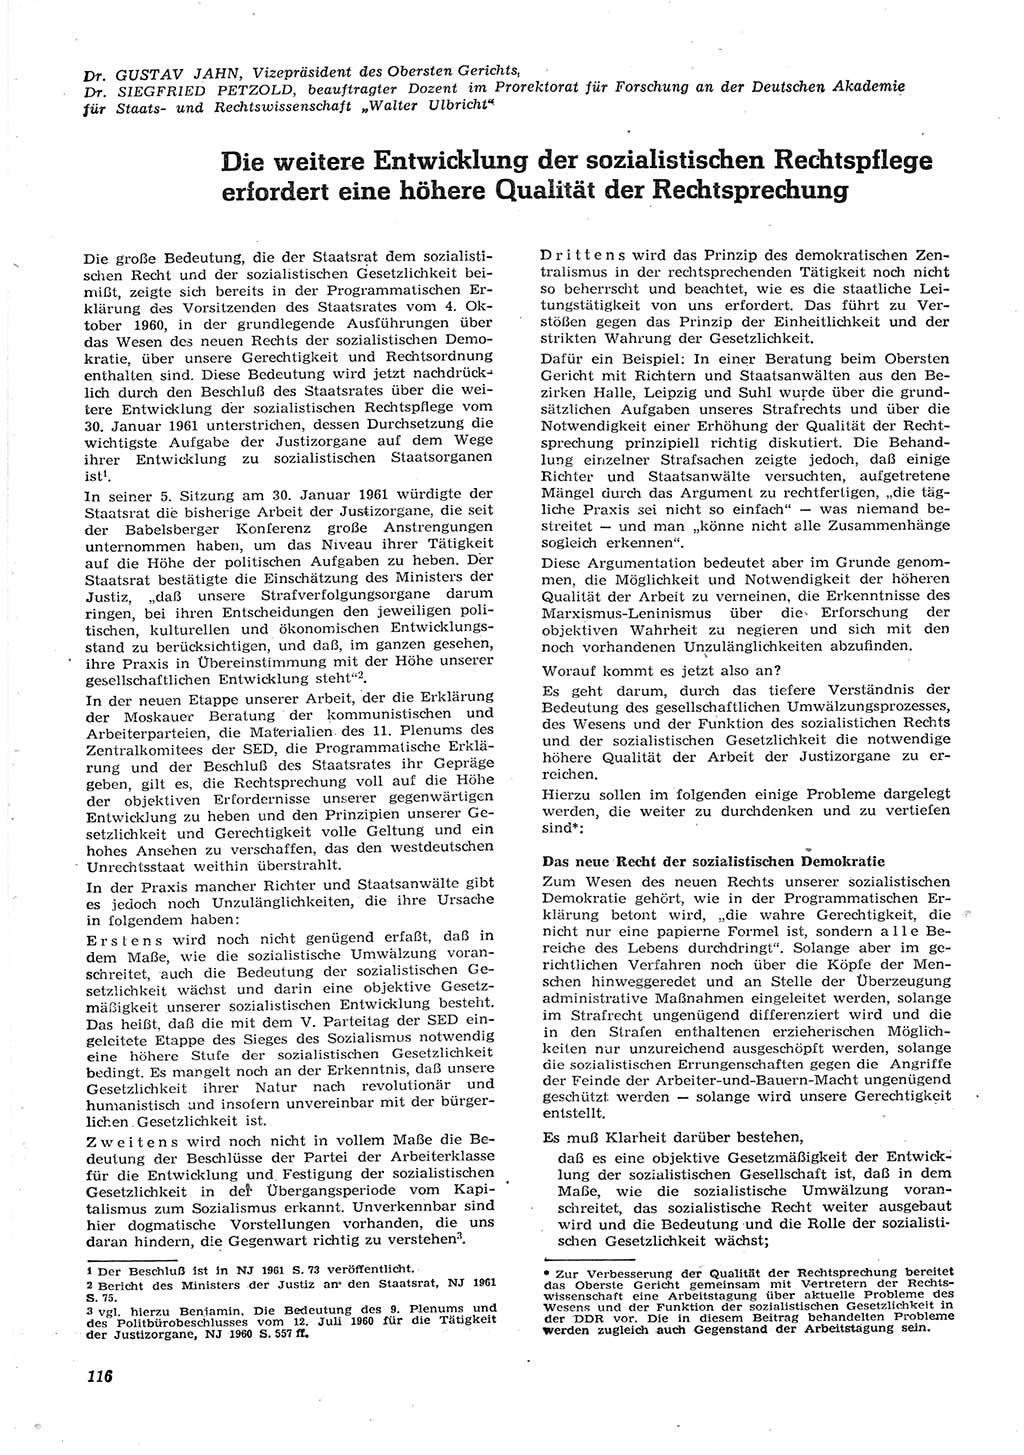 Neue Justiz (NJ), Zeitschrift für Recht und Rechtswissenschaft [Deutsche Demokratische Republik (DDR)], 15. Jahrgang 1961, Seite 116 (NJ DDR 1961, S. 116)